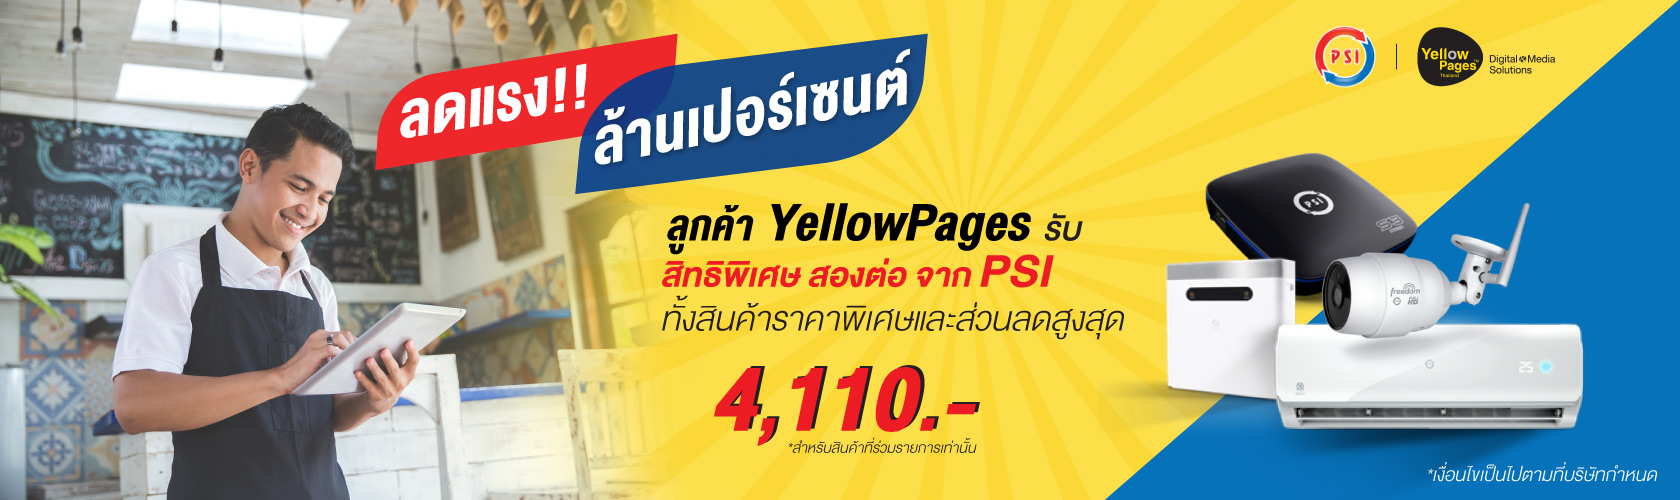 ลดแรง!! ล้านเปอร์เซนต์ ลูกค้า YellowPages รับสิทธิพิเศษ สองต่อ จาก PSI ทั้งสินค้าราคาพิเศษ